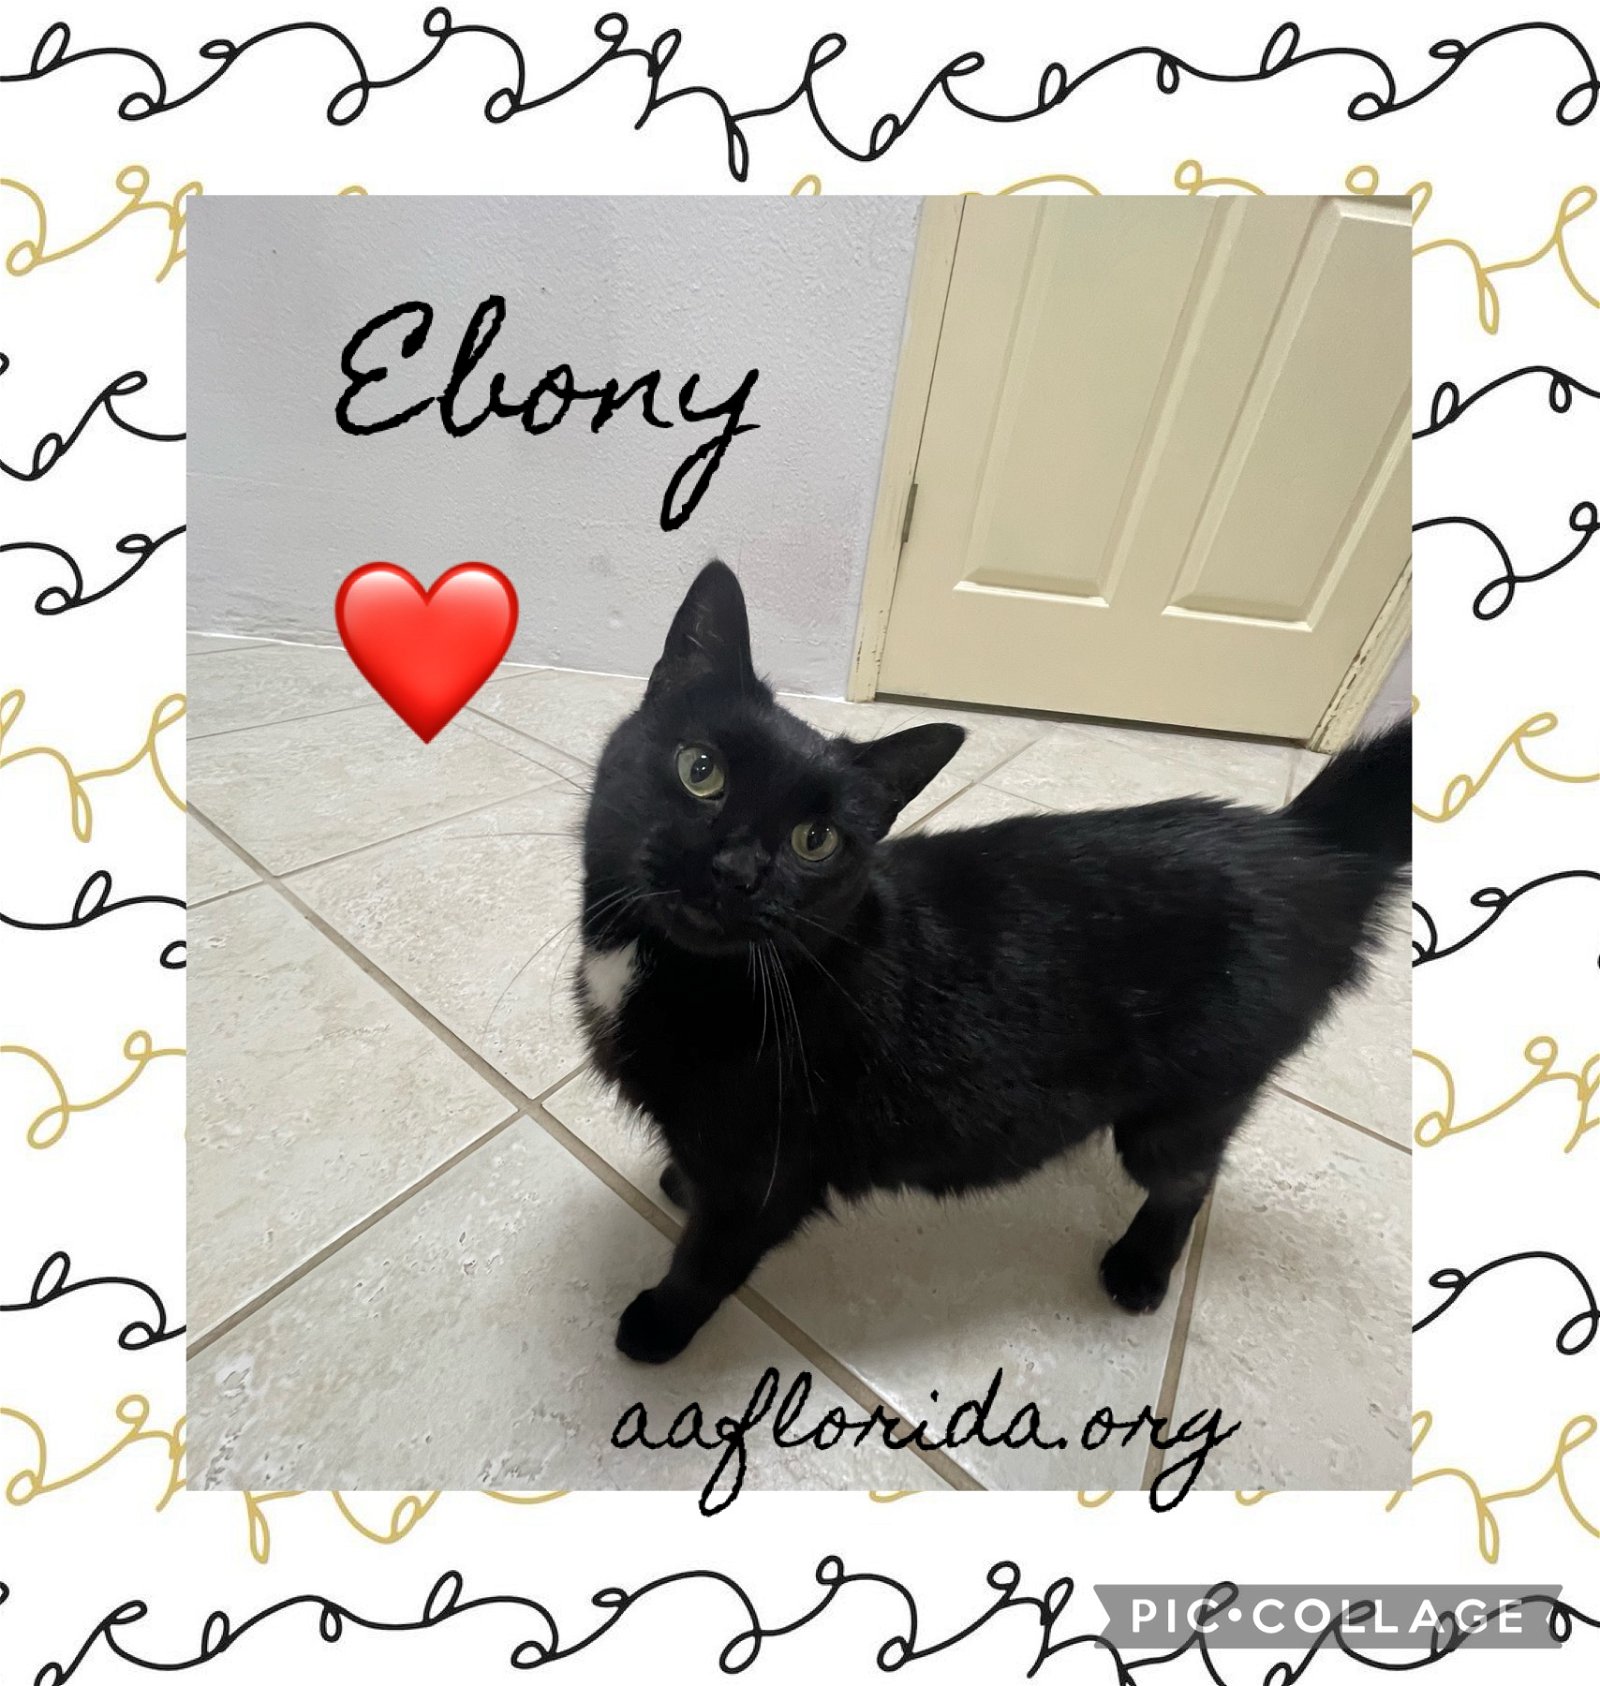 adoptable Cat in Pensacola, FL named Ebony